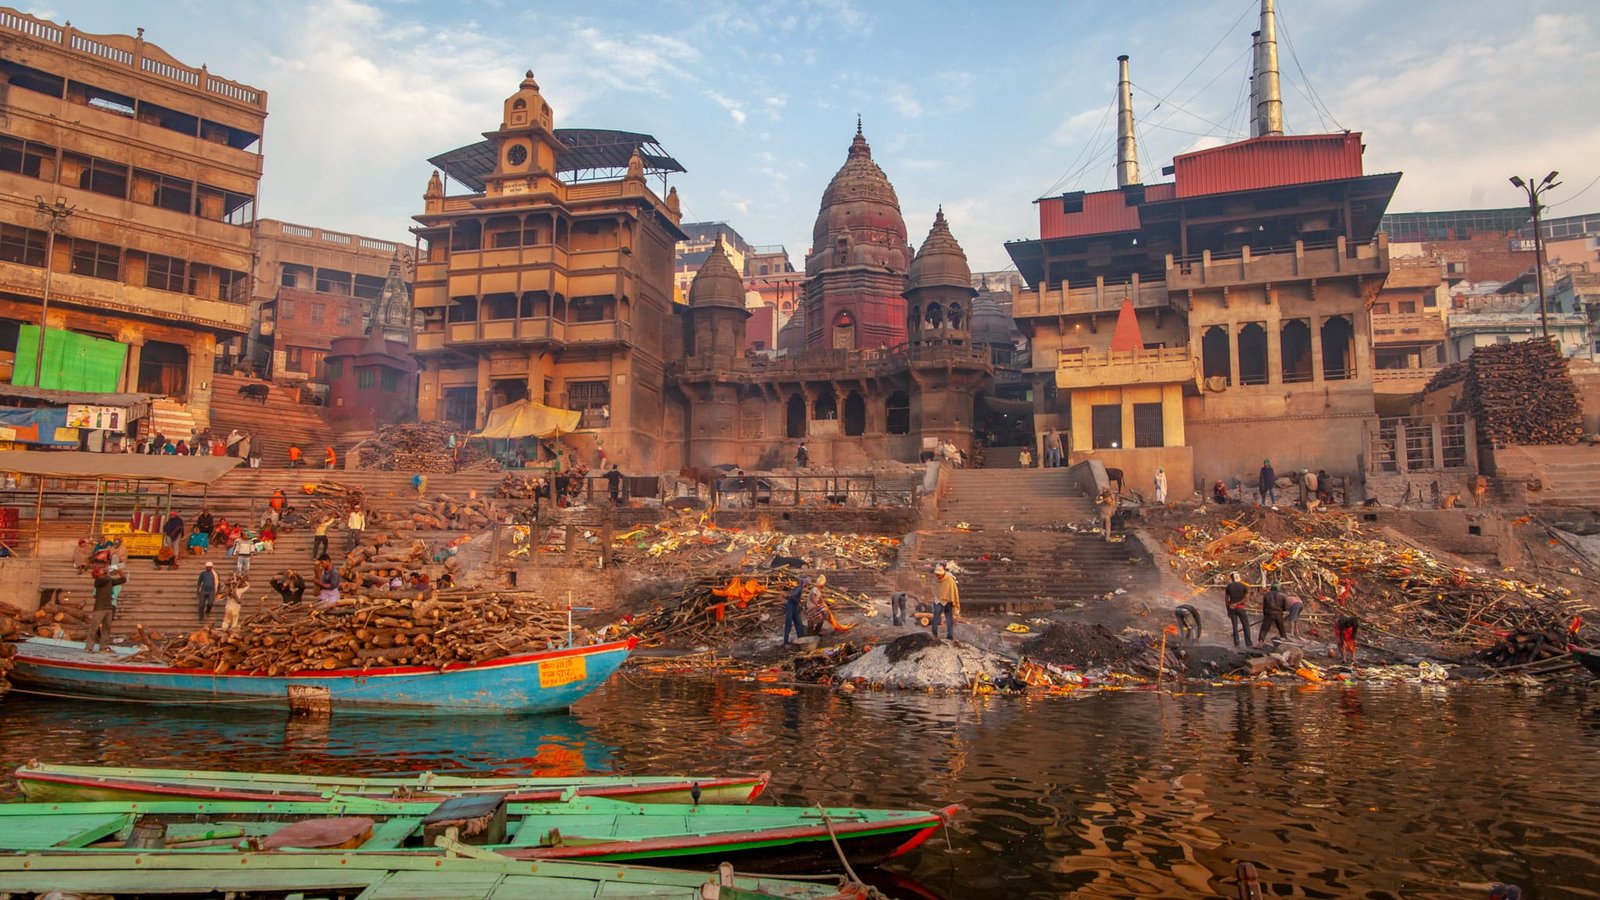 Cremaciones Varanasi